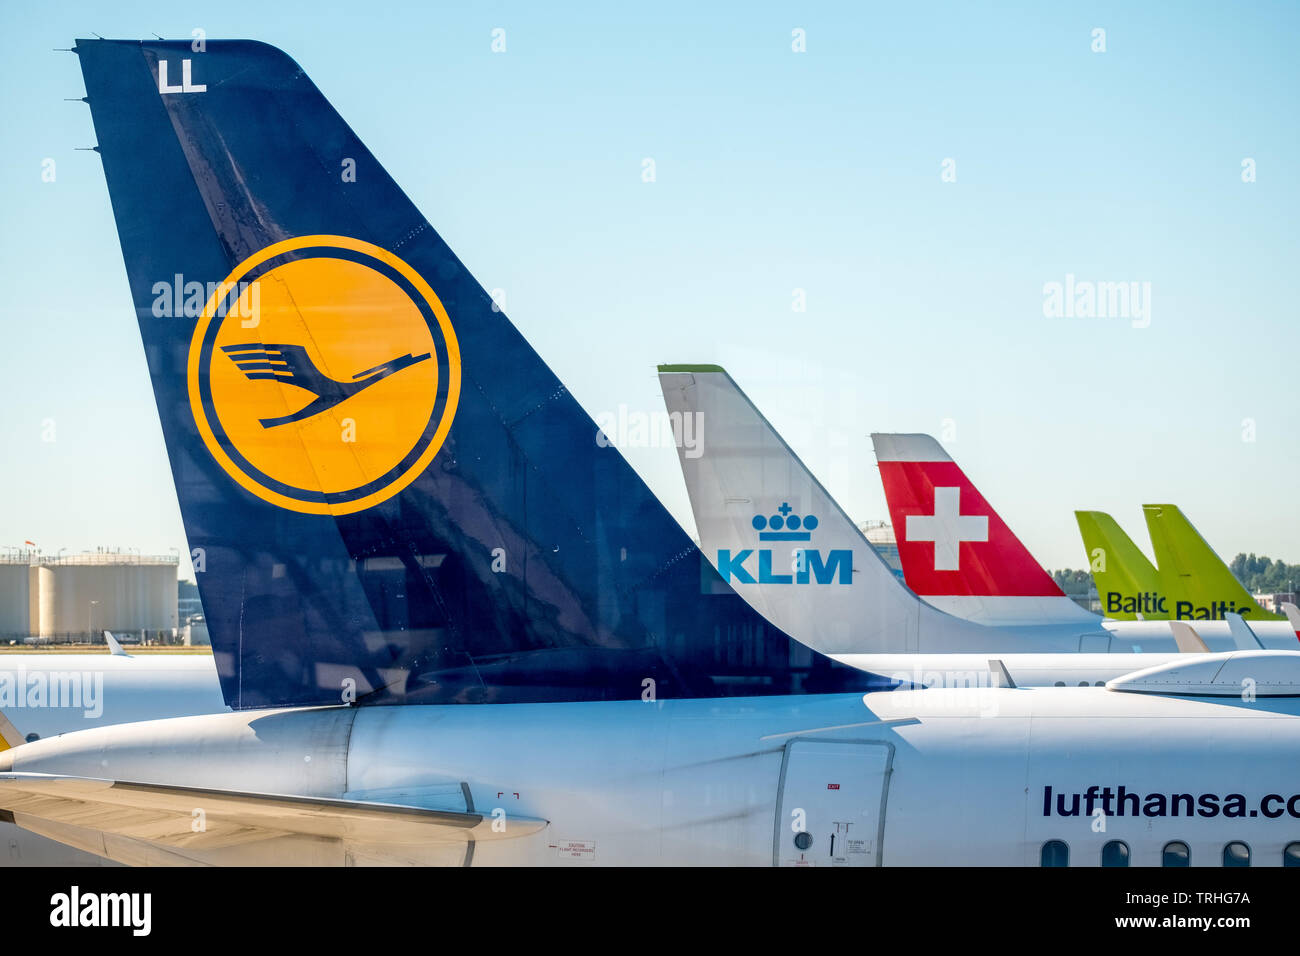 Profile der Lufthansa, KLM, Swiss Air und Baltischen Luft am Flughafen Schiphol Amsterdam, Noord-Holland, Niederlande, Europa, Schiphol, NLD, Reise, Tourismus Stockfoto